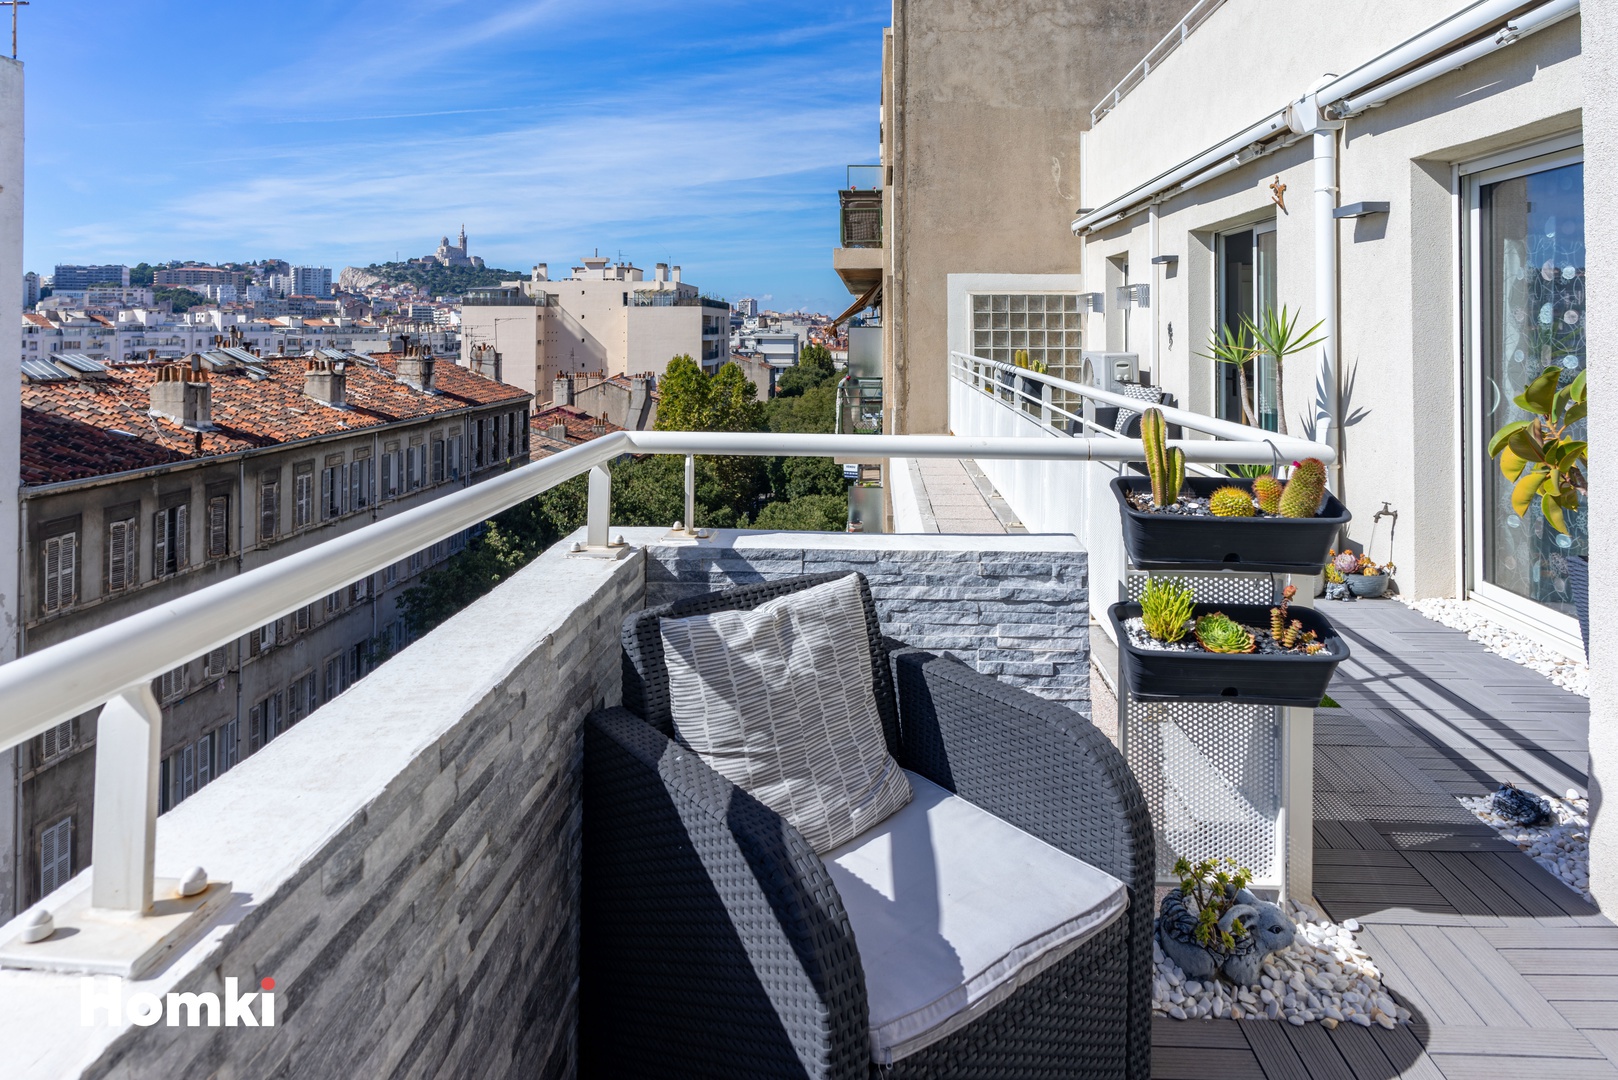 Homki - Vente Appartement  de 86.0 m² à Marseille 13006